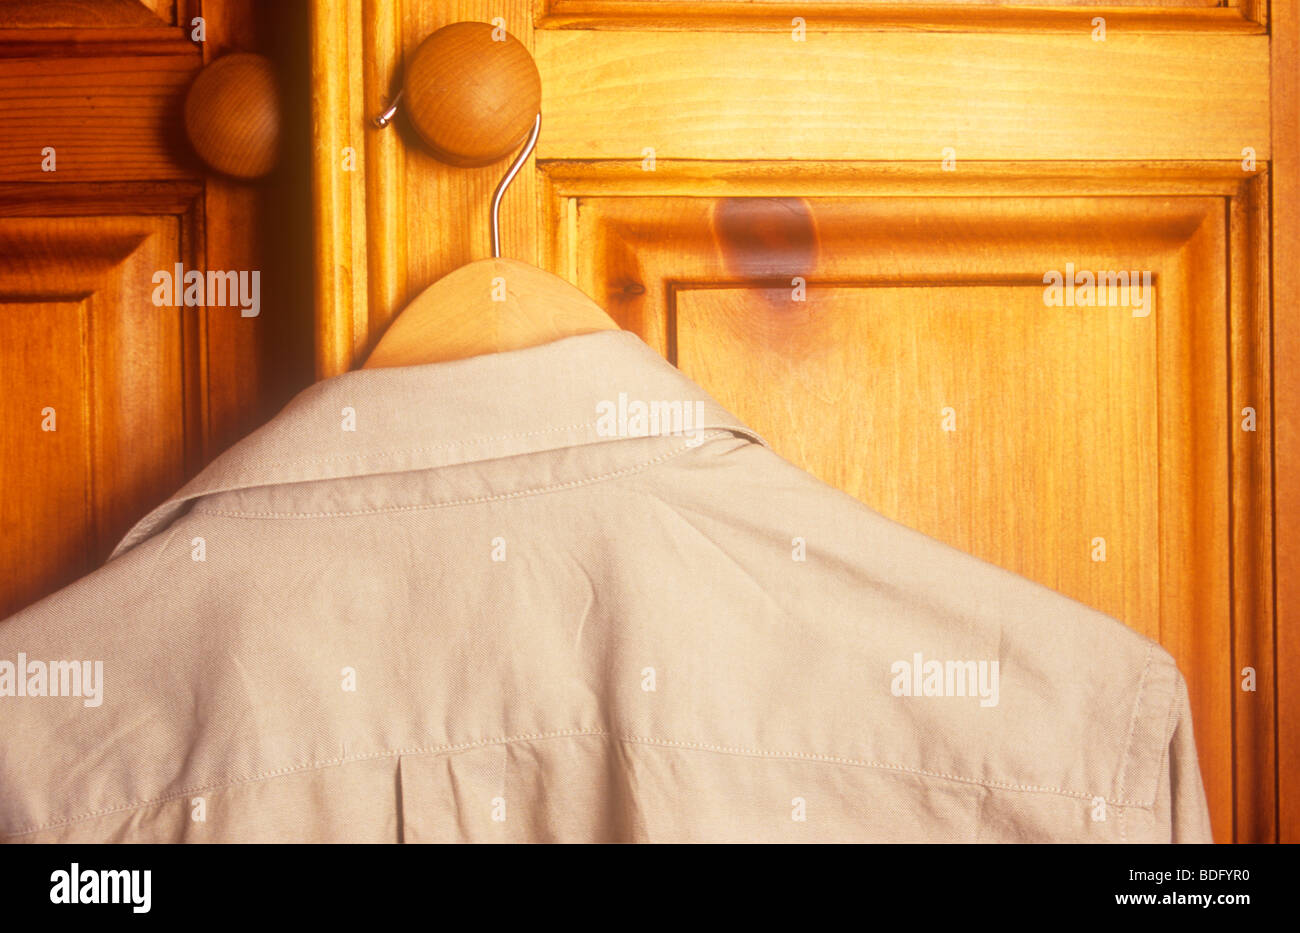 Brun pâle chemise sur cintre en bois poignée bois de pin de l'armoire Banque D'Images